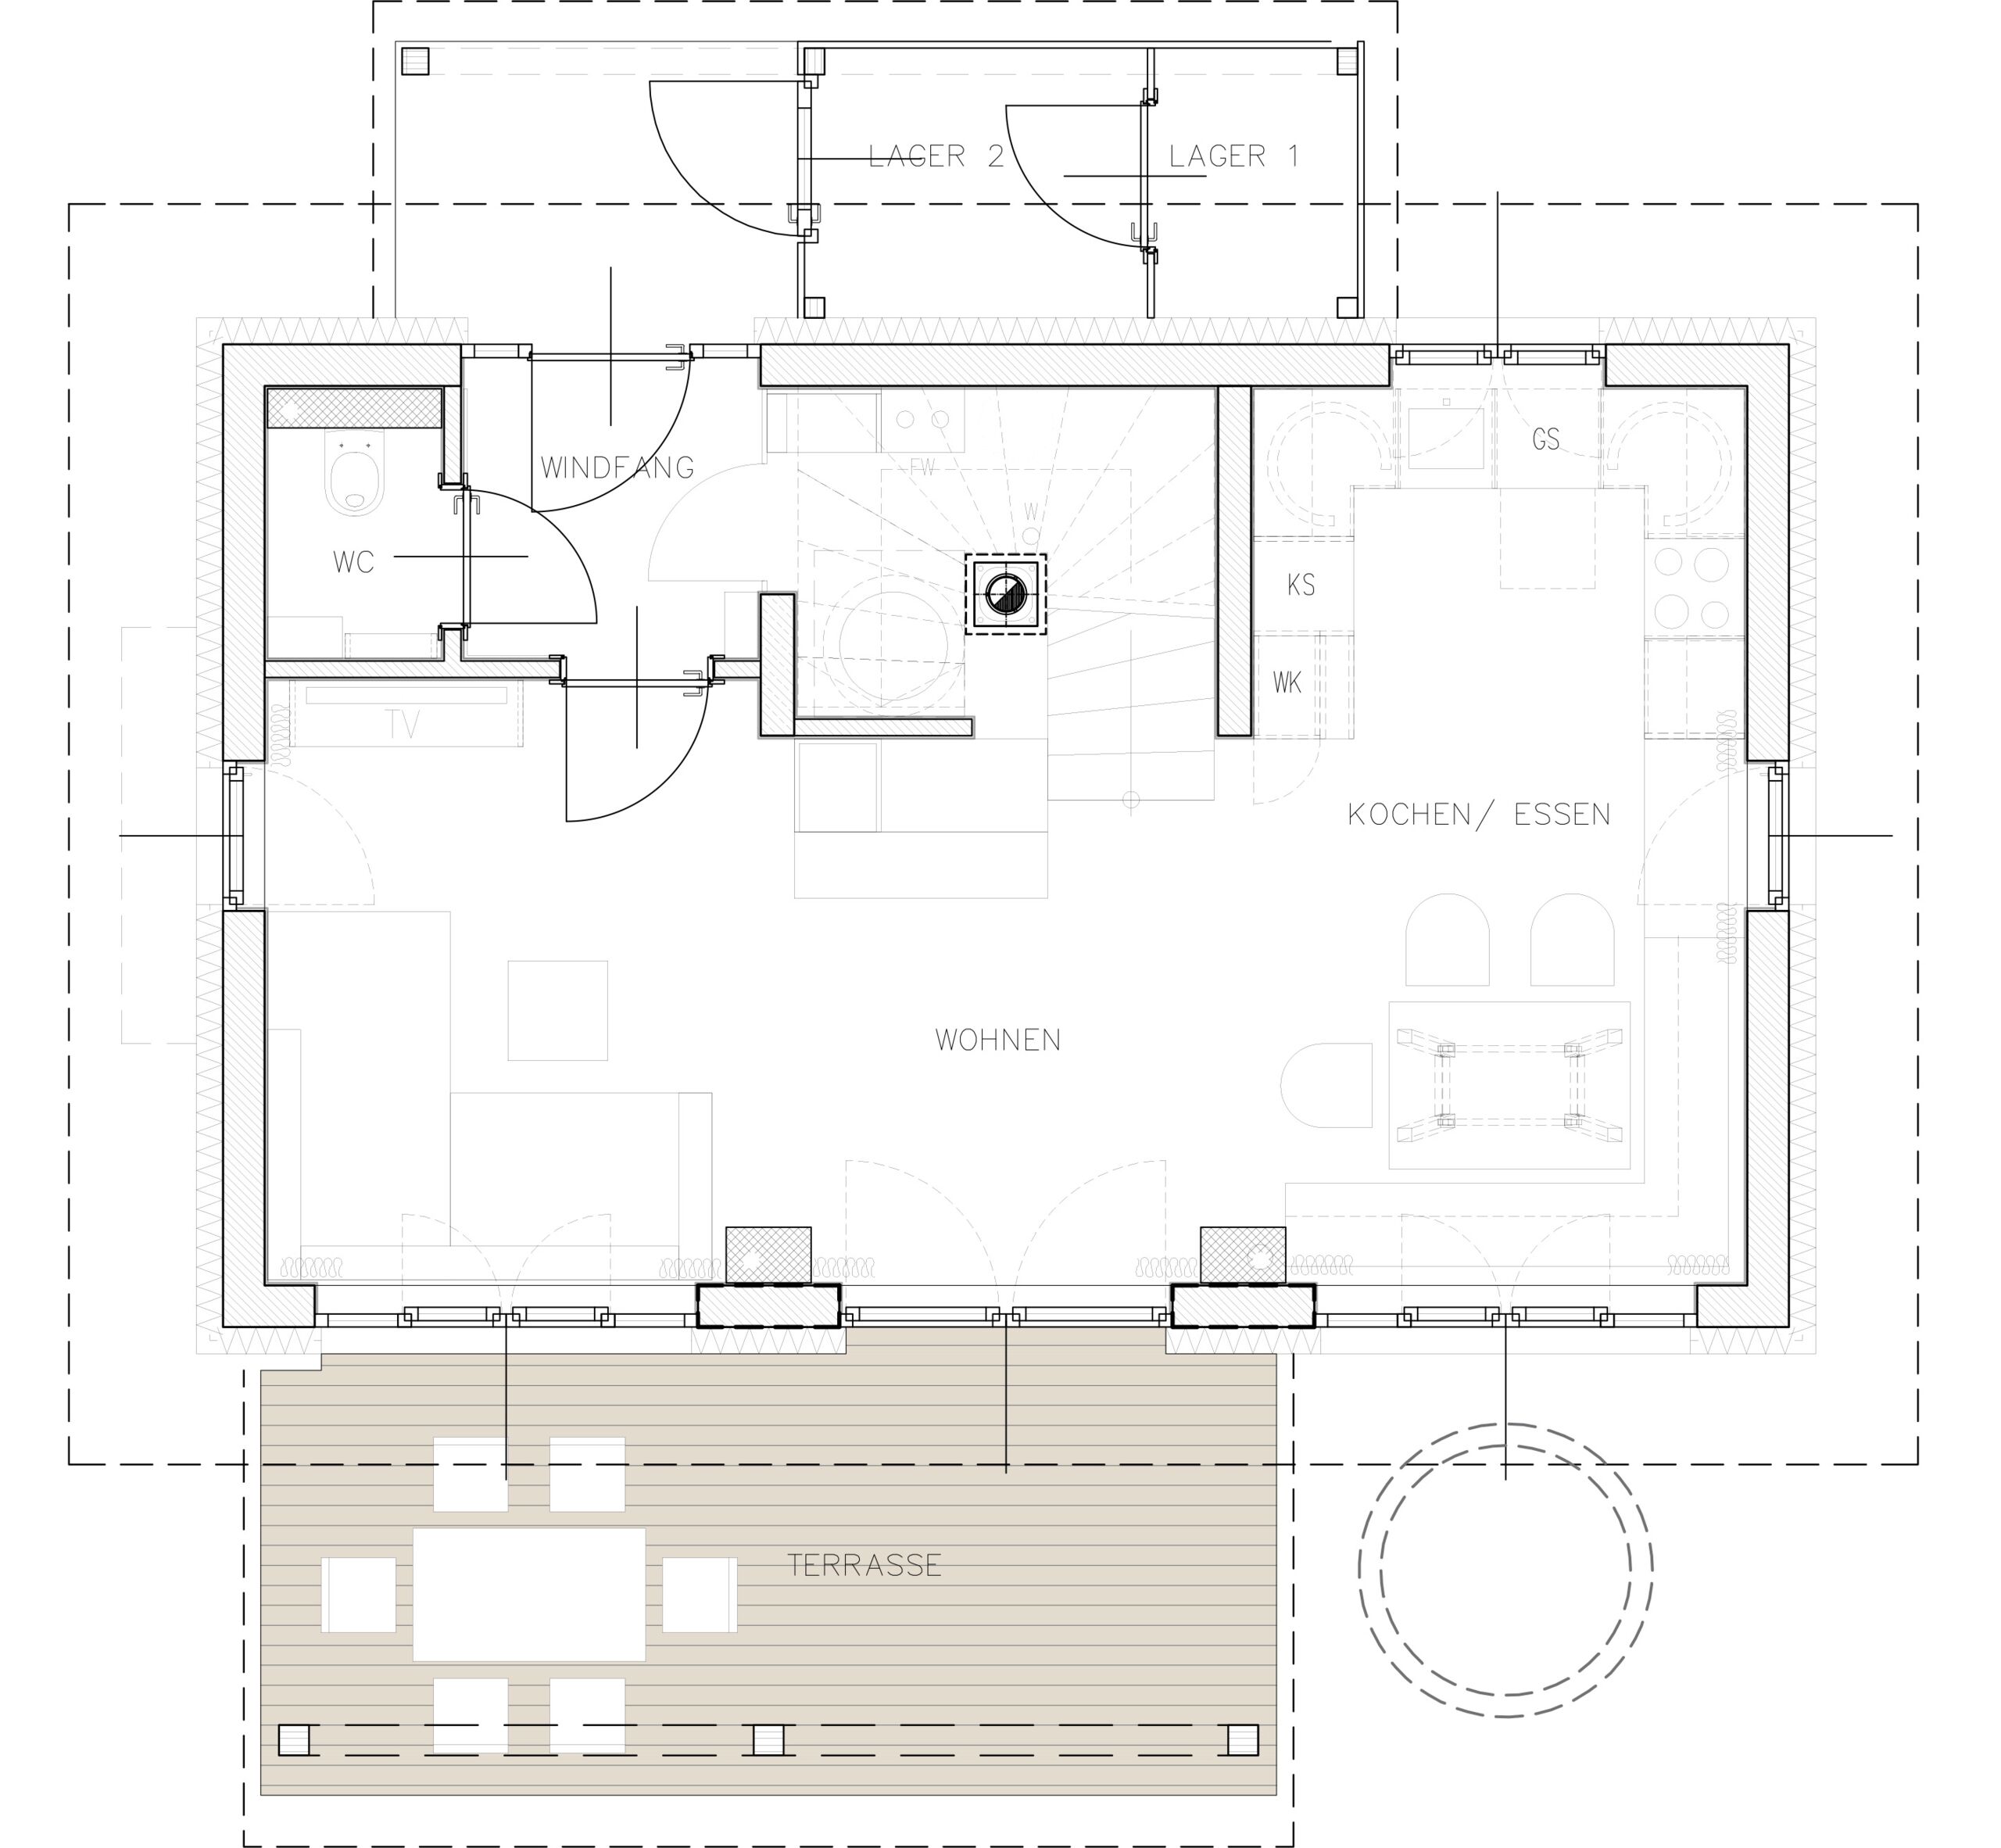 Floor plan of Trattlers Hof Chalets